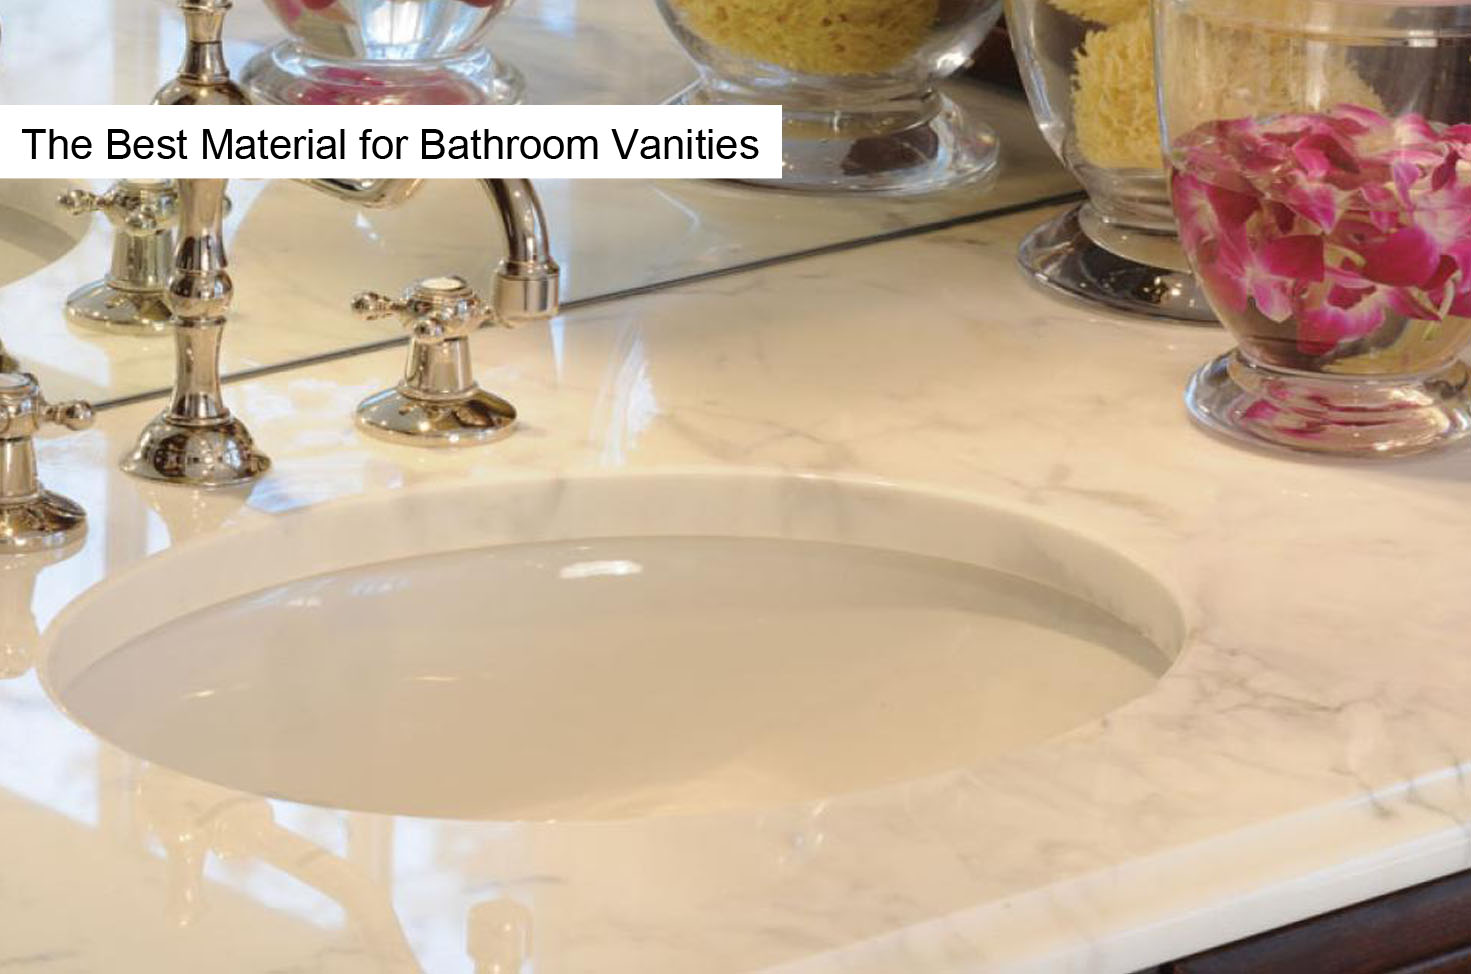 The Best Material for Bathroom Vanities